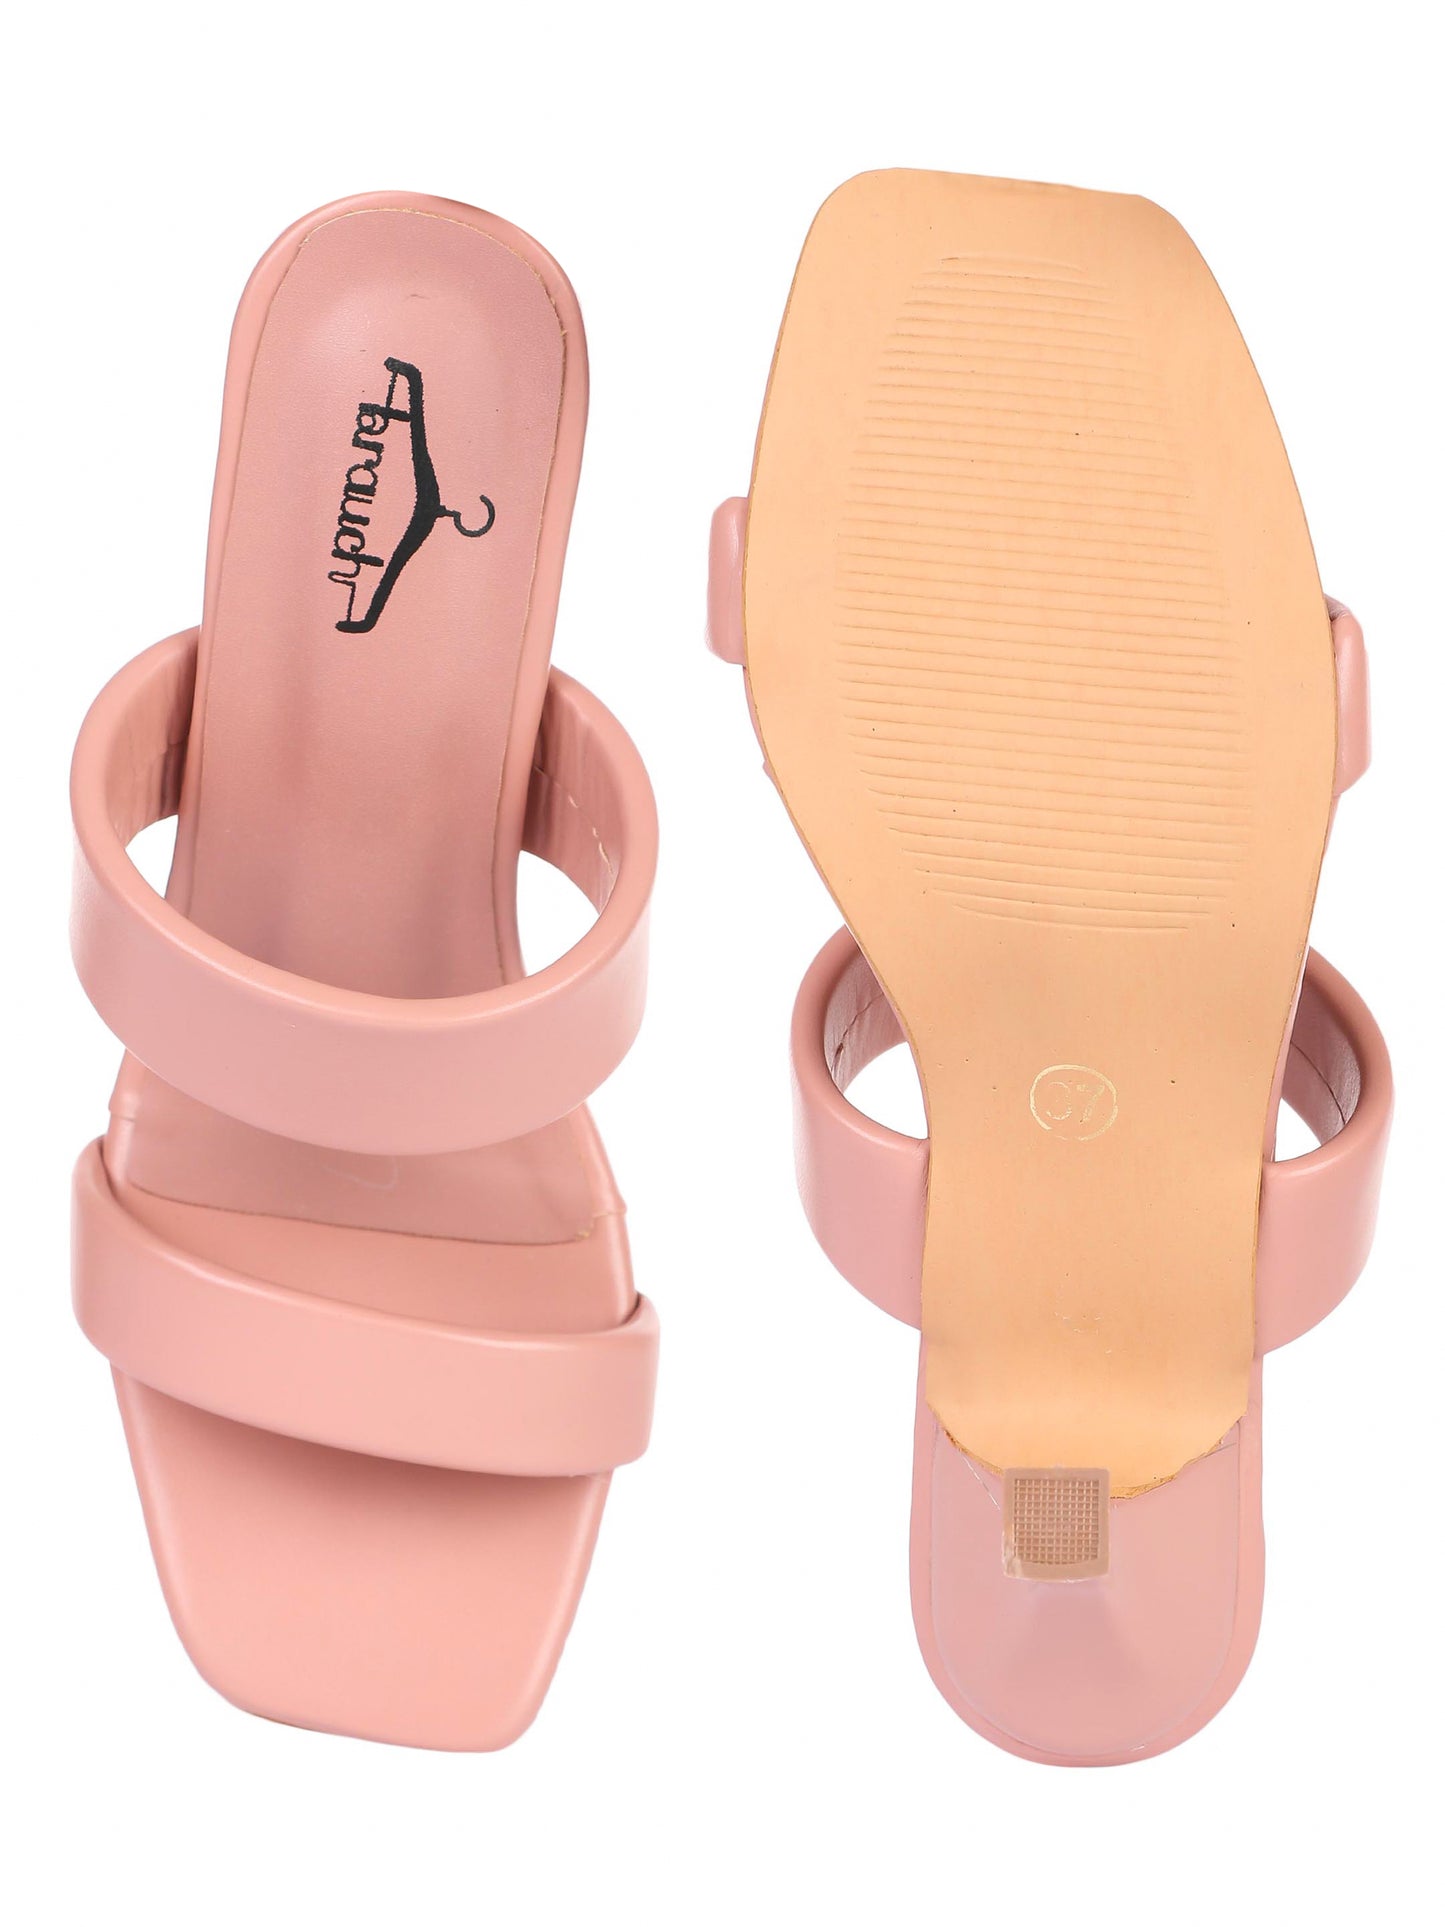 Brauch Women's Peach Solid Stiletto heels